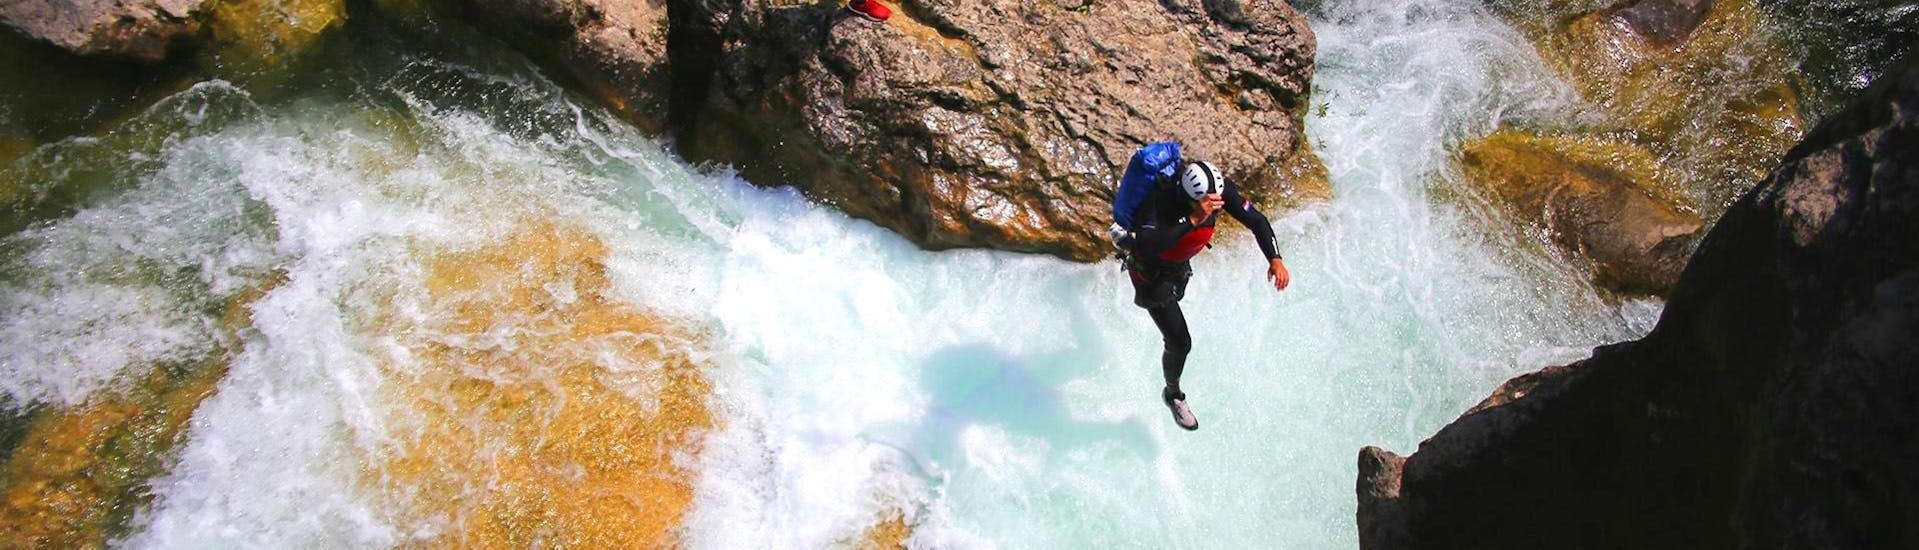 Ein Canyoning-Guide von Adventure Dalmatia springt während des Canyoning für Anfänger an der Cetina ins Wasser.